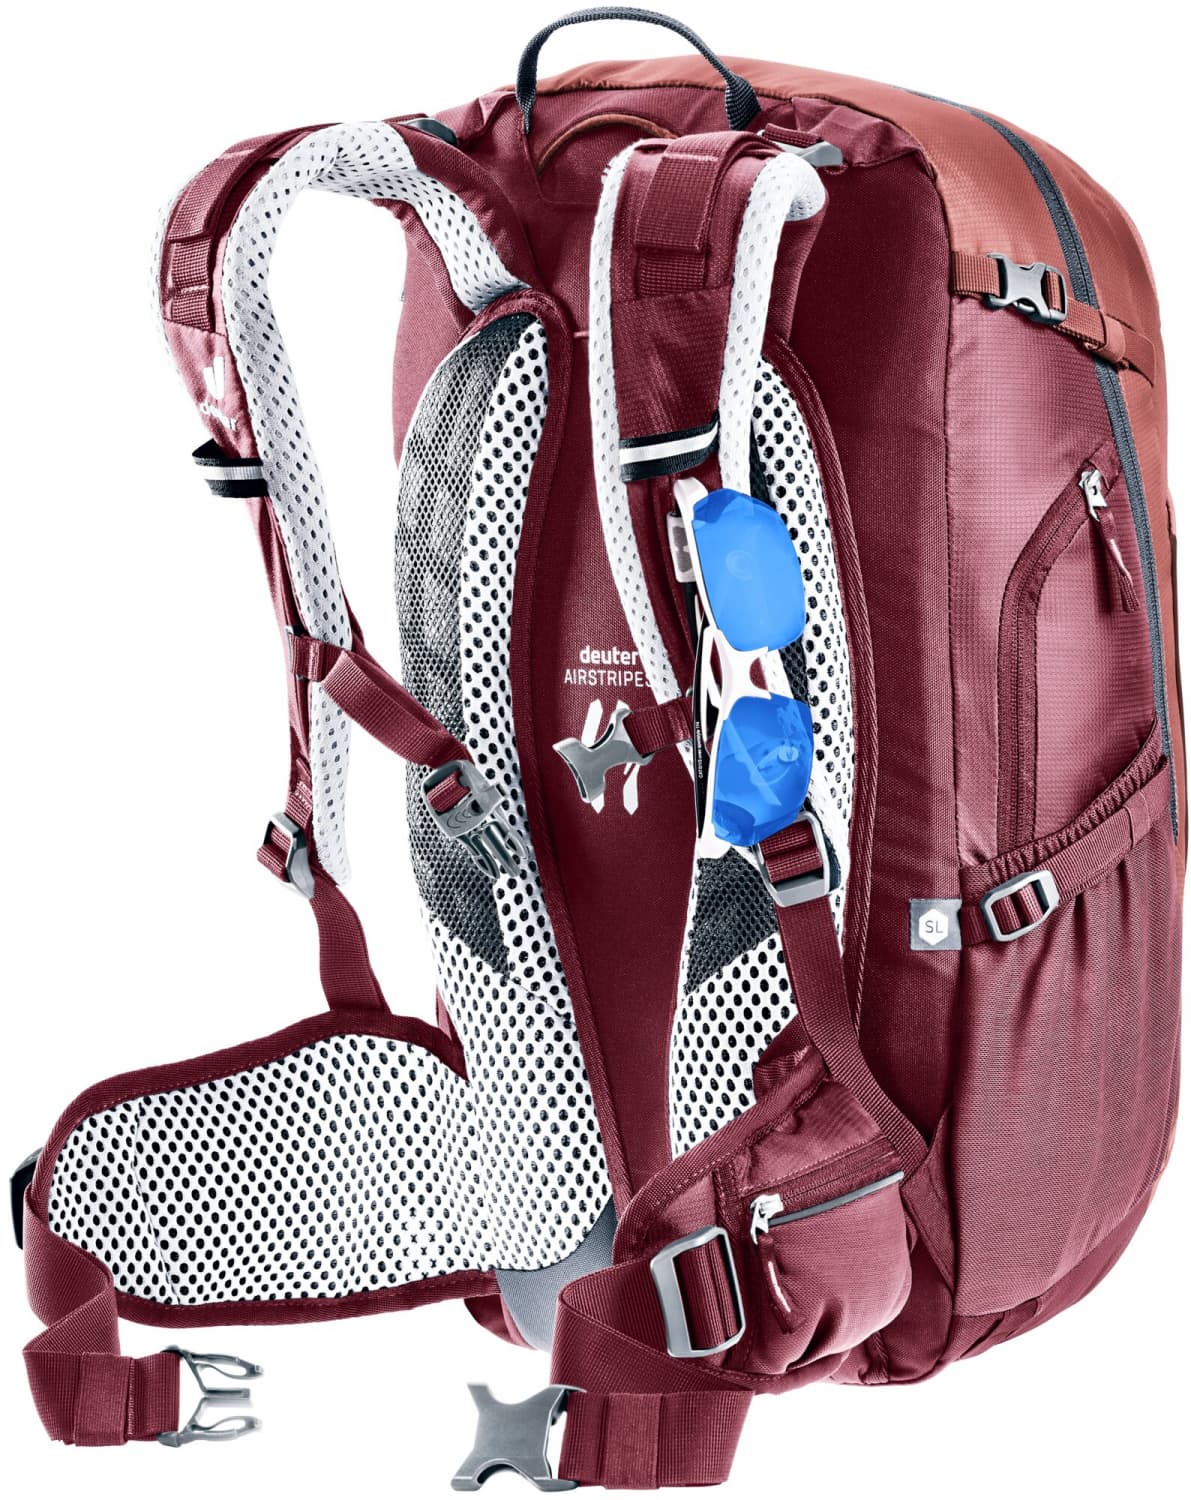 Deuter Trans alpine 28 SL Ruby-blackberry Rucksack online kaufen | eBay